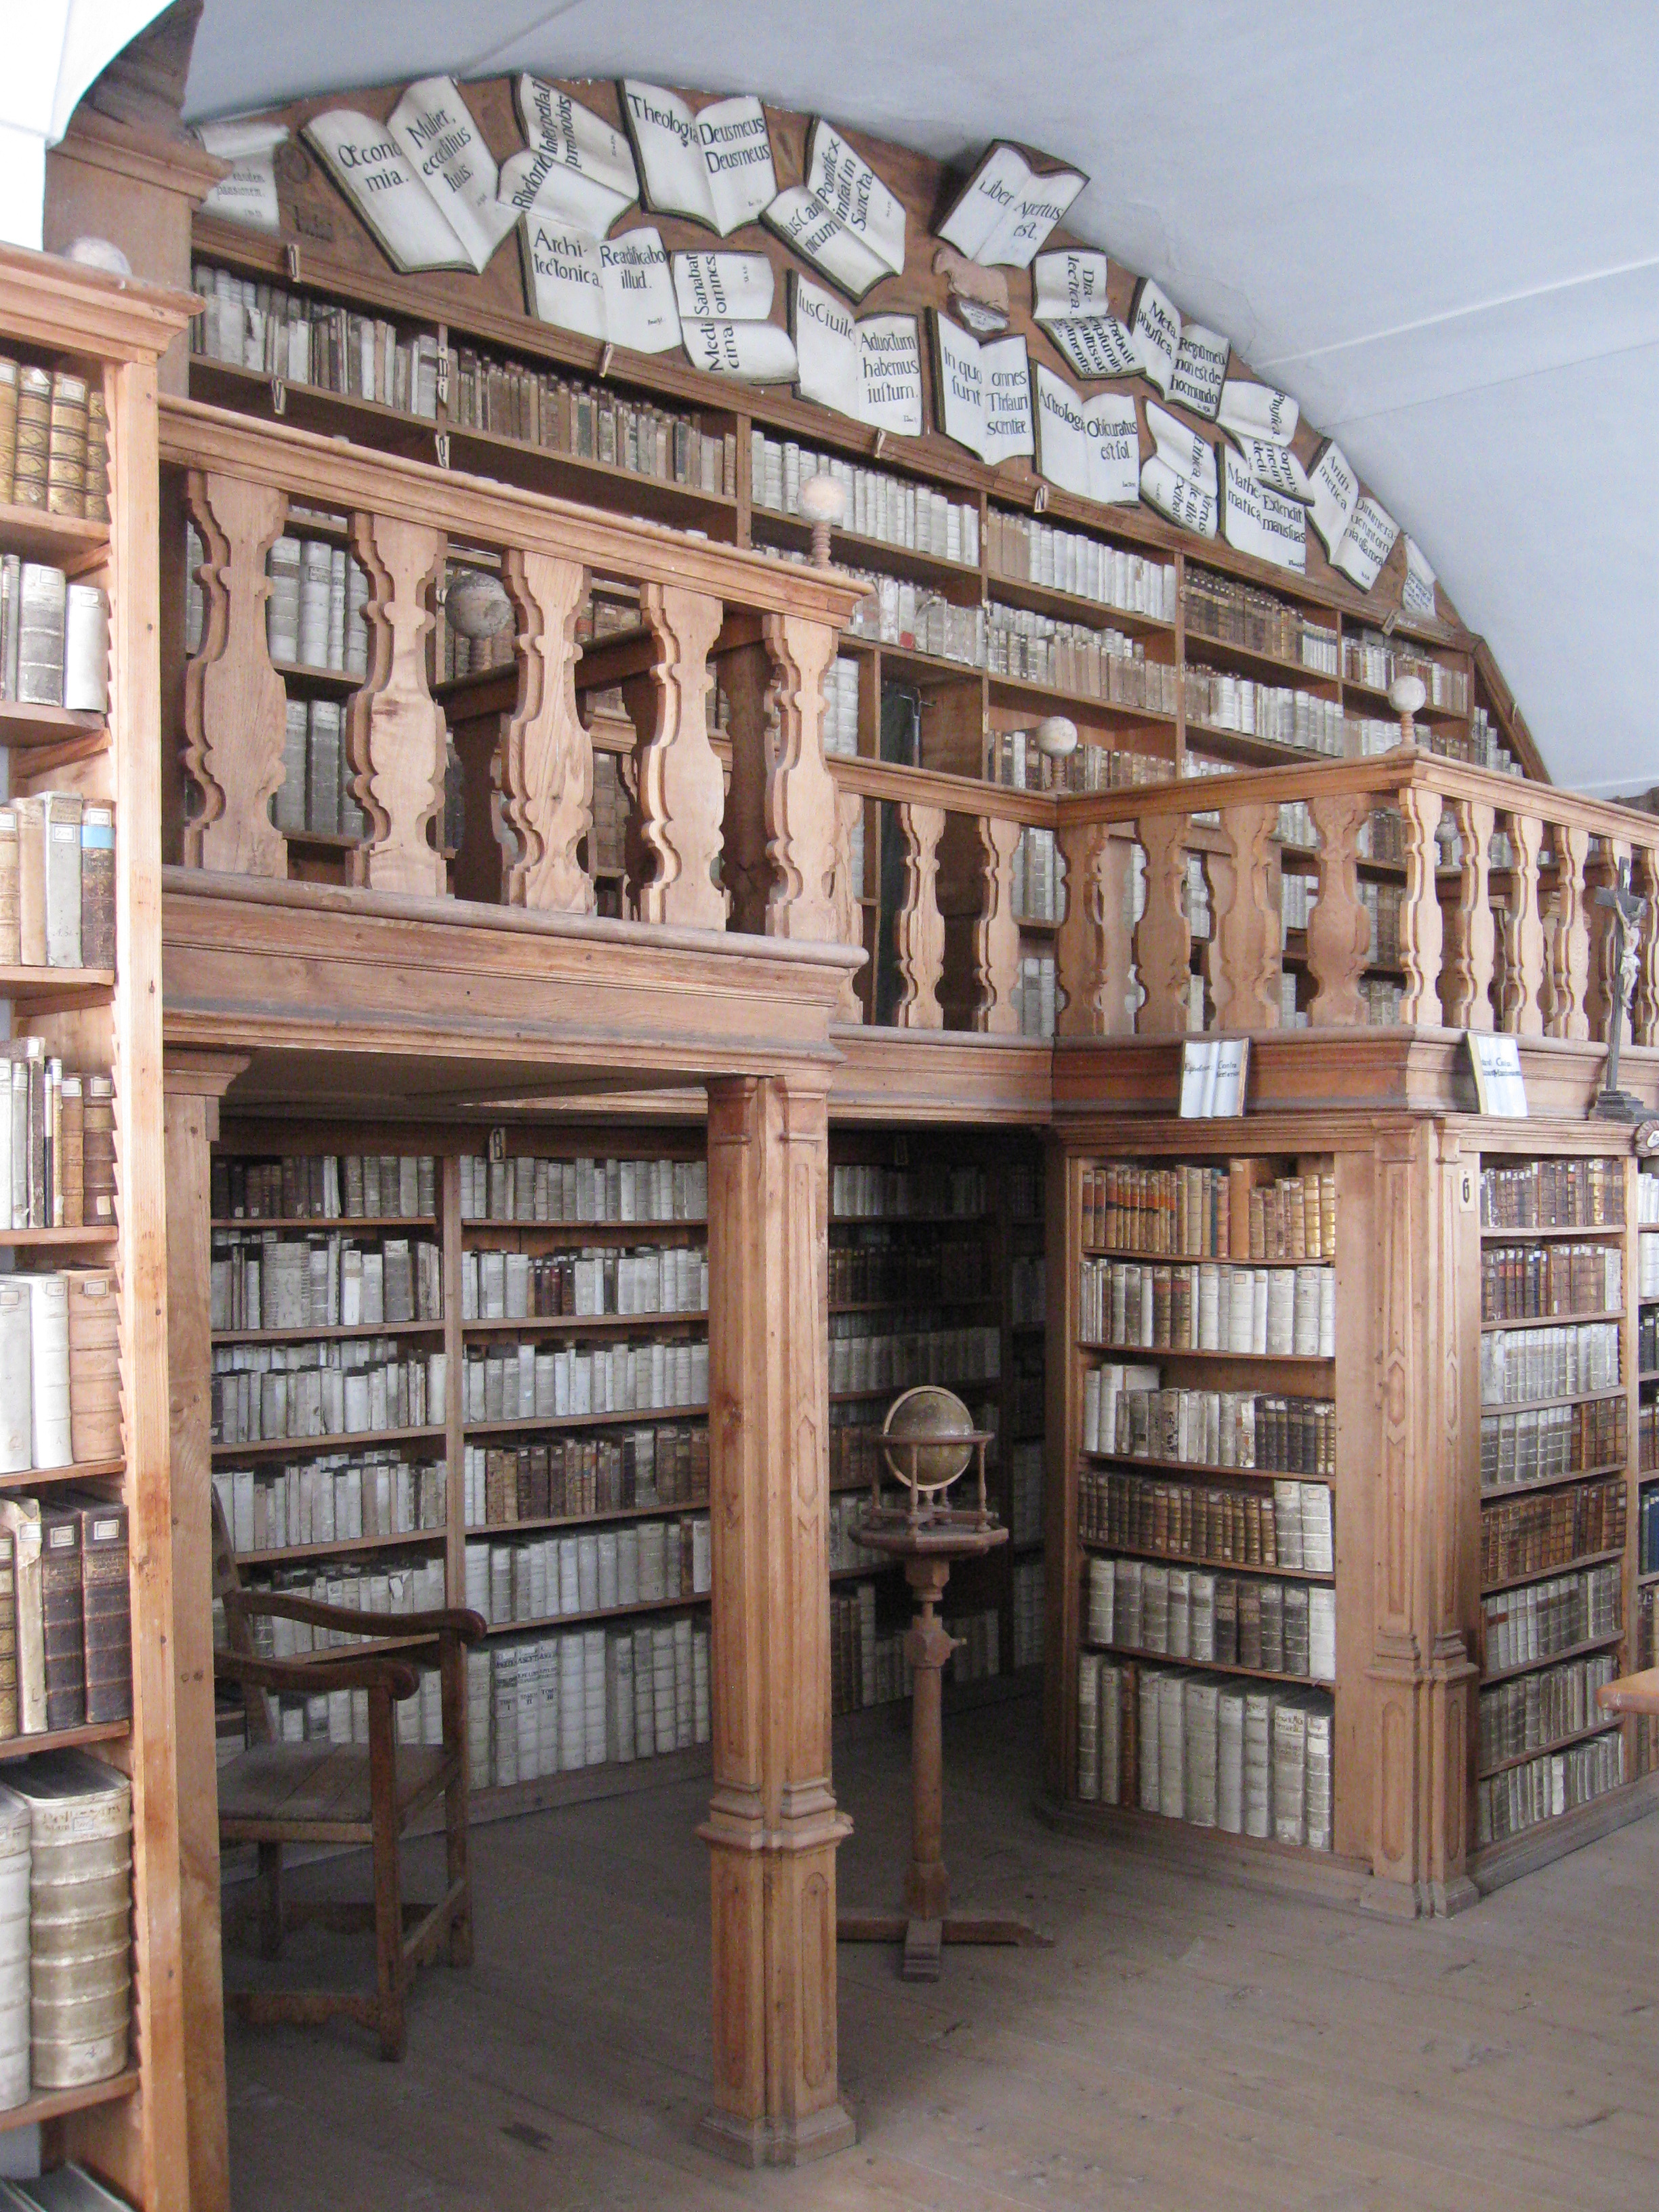 Kloster Reisach Bibliothek8.JPG